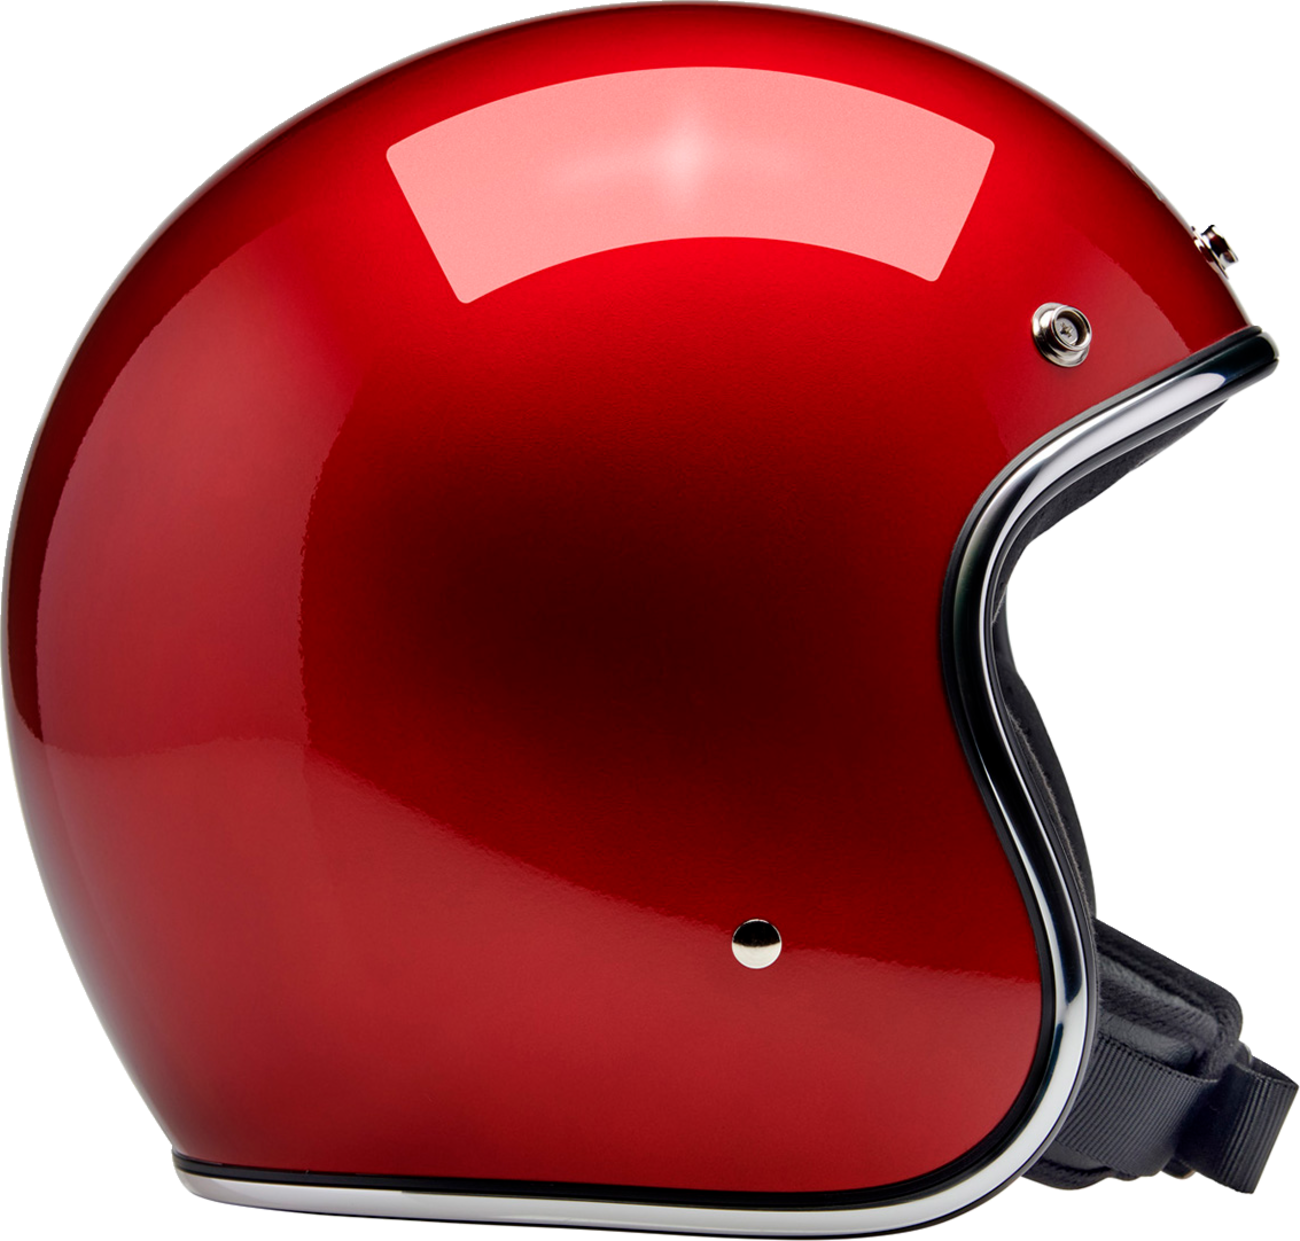 BILTWELL Bonanza Helmet - Metallic Cherry Red - XL 1001-351-205